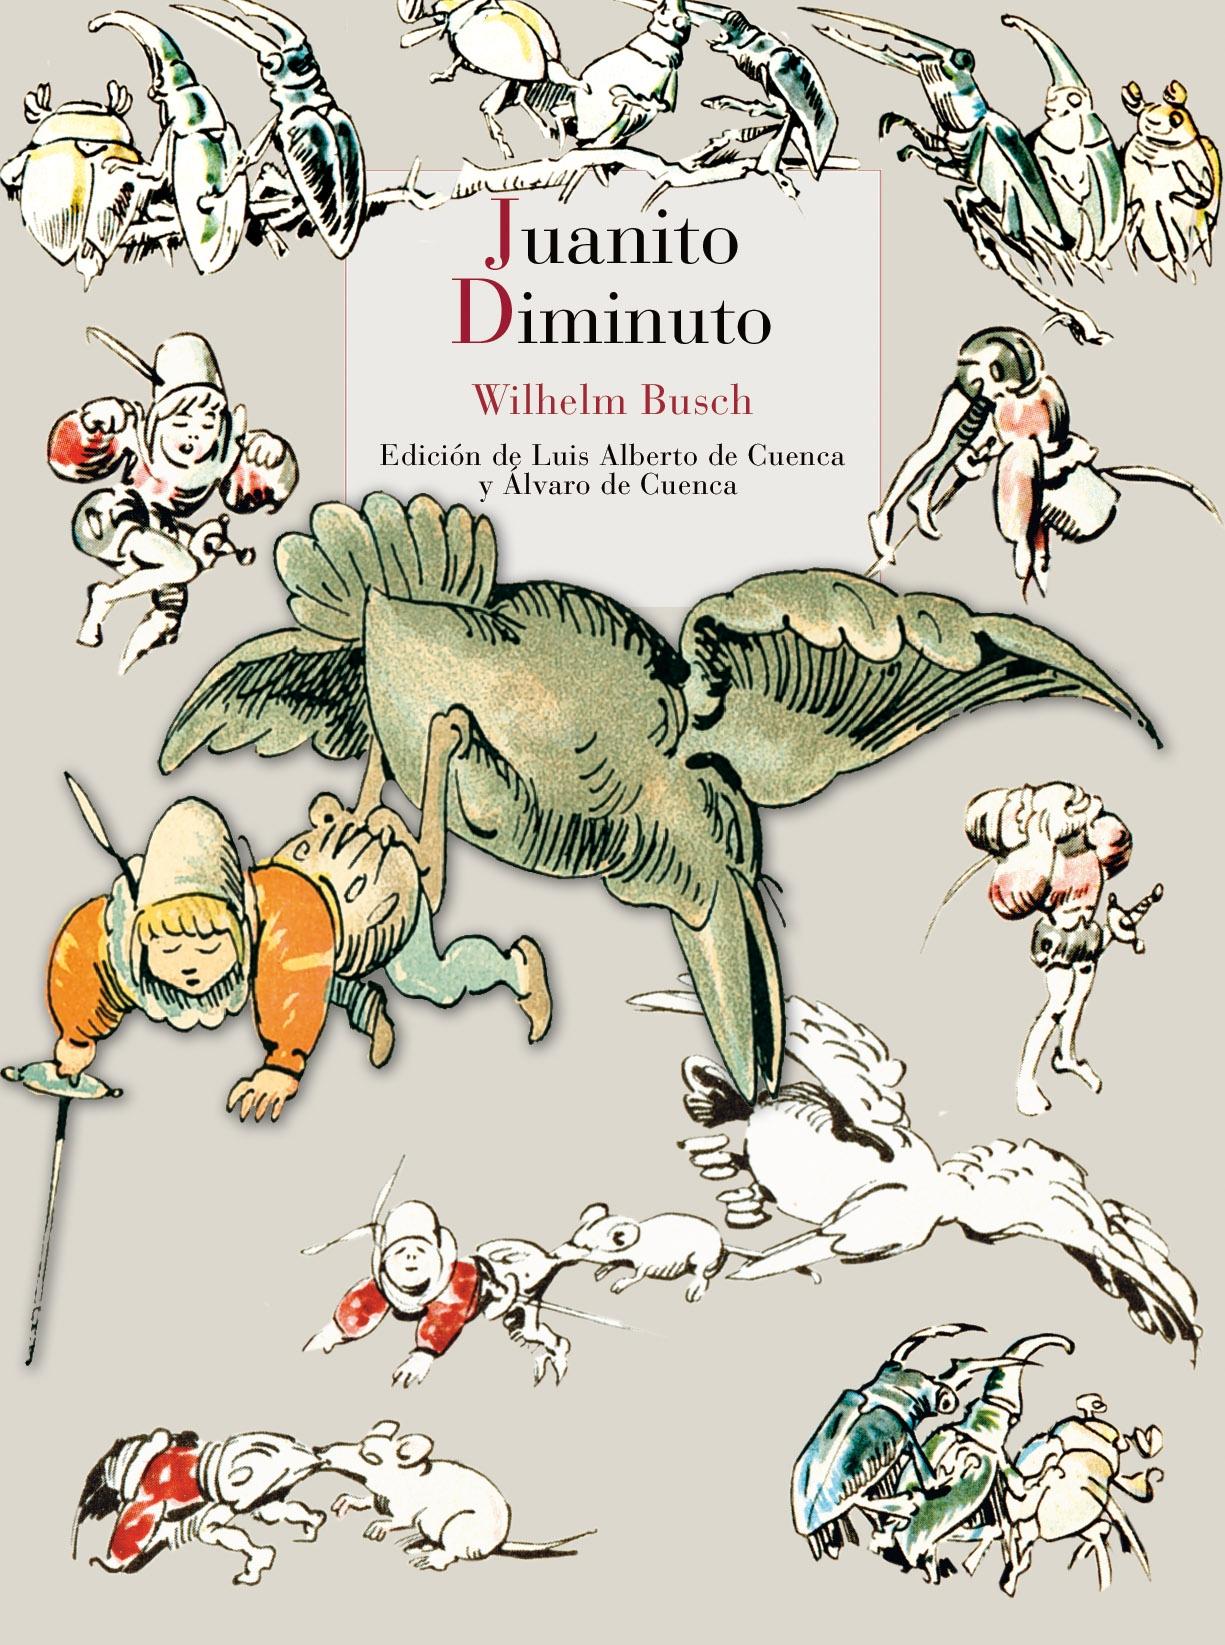 Juanito Diminuto "Traducción de Luis Alberto de Cuenca". 